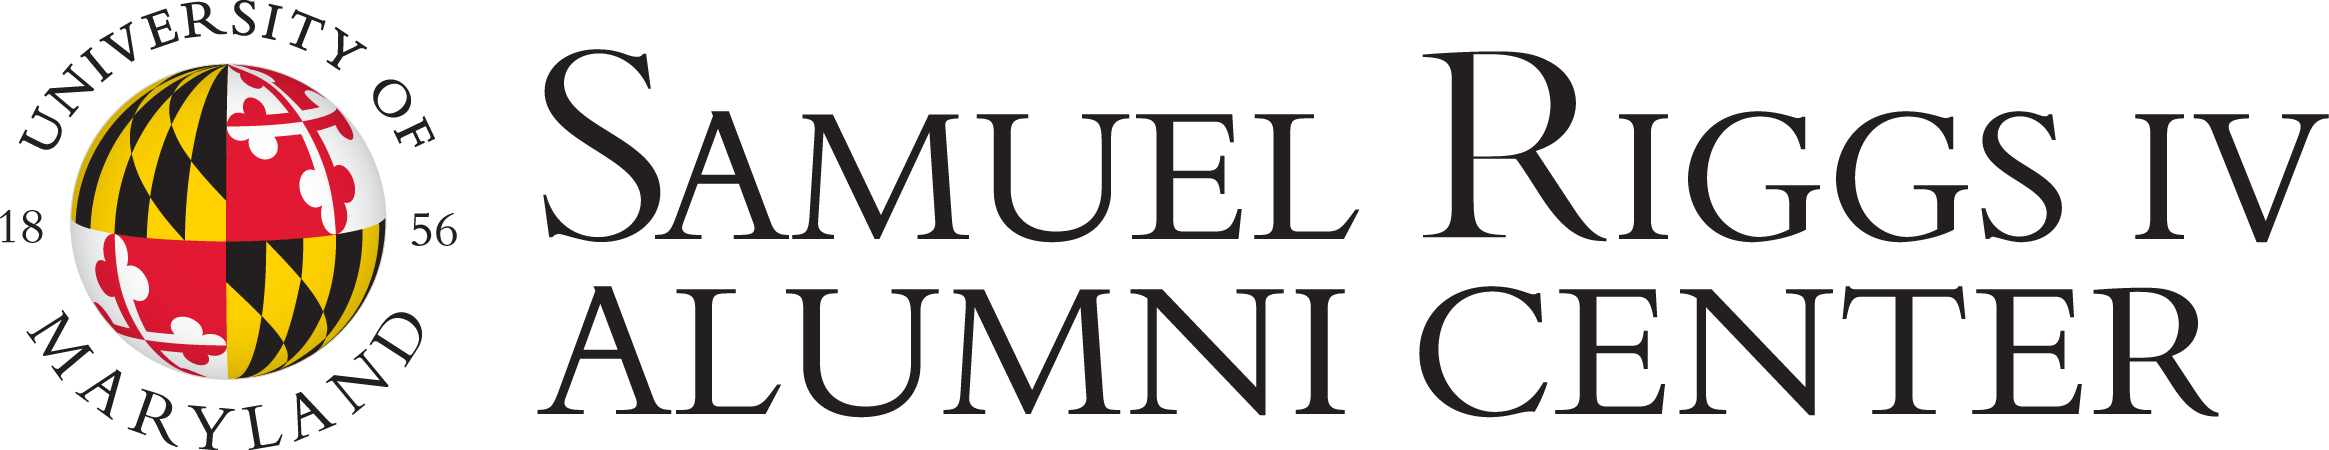 Samuel Riggs IV Alumni Center footer logo